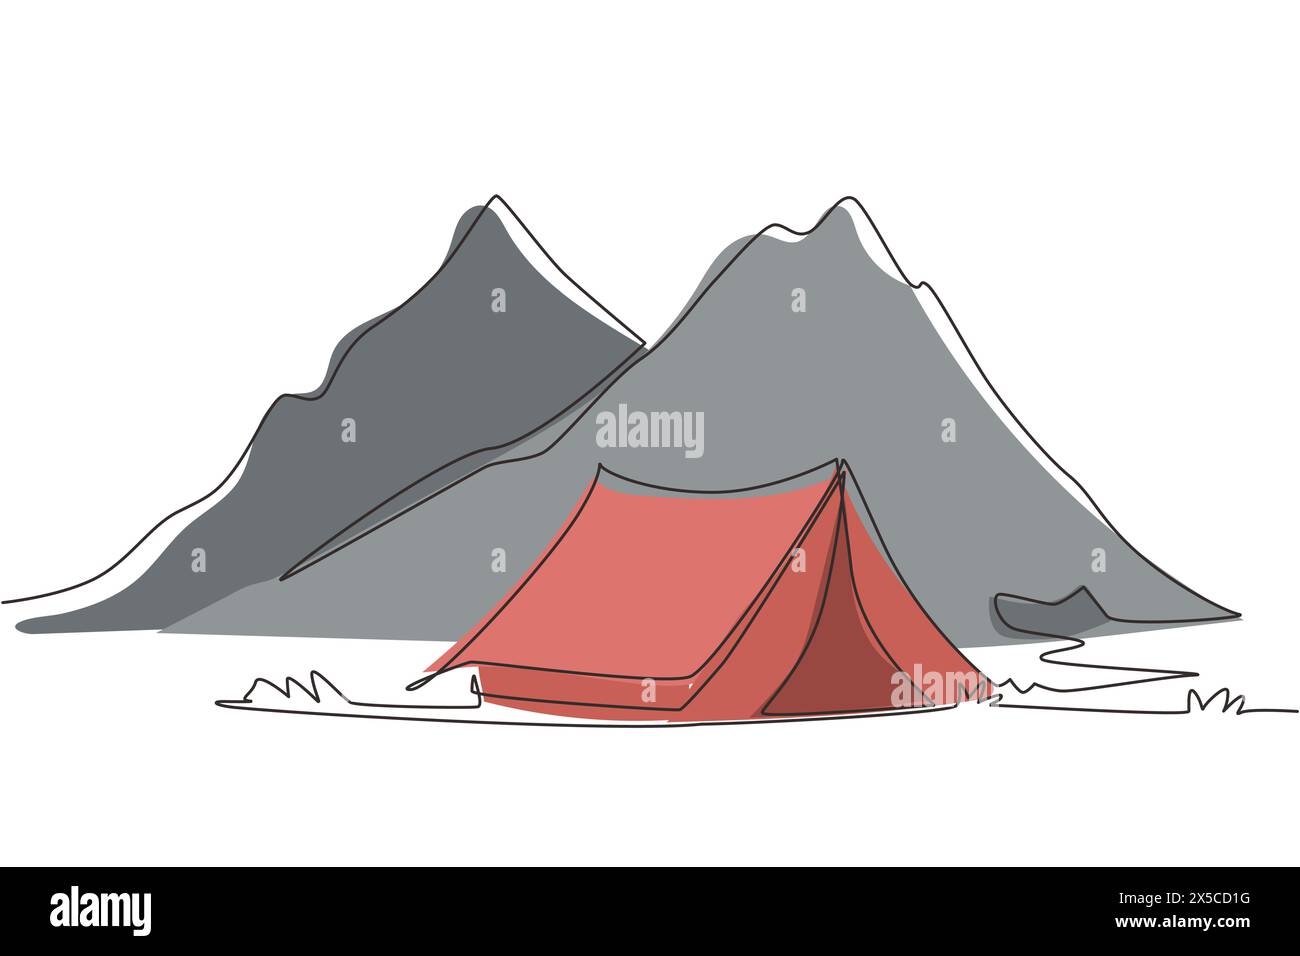 Une seule ligne dessin aventure camping paysage de nuit. Tente, camping, forêt de pins et montagnes rocheuses. Sports, randonnée, camping, loisirs de plein air Illustration de Vecteur